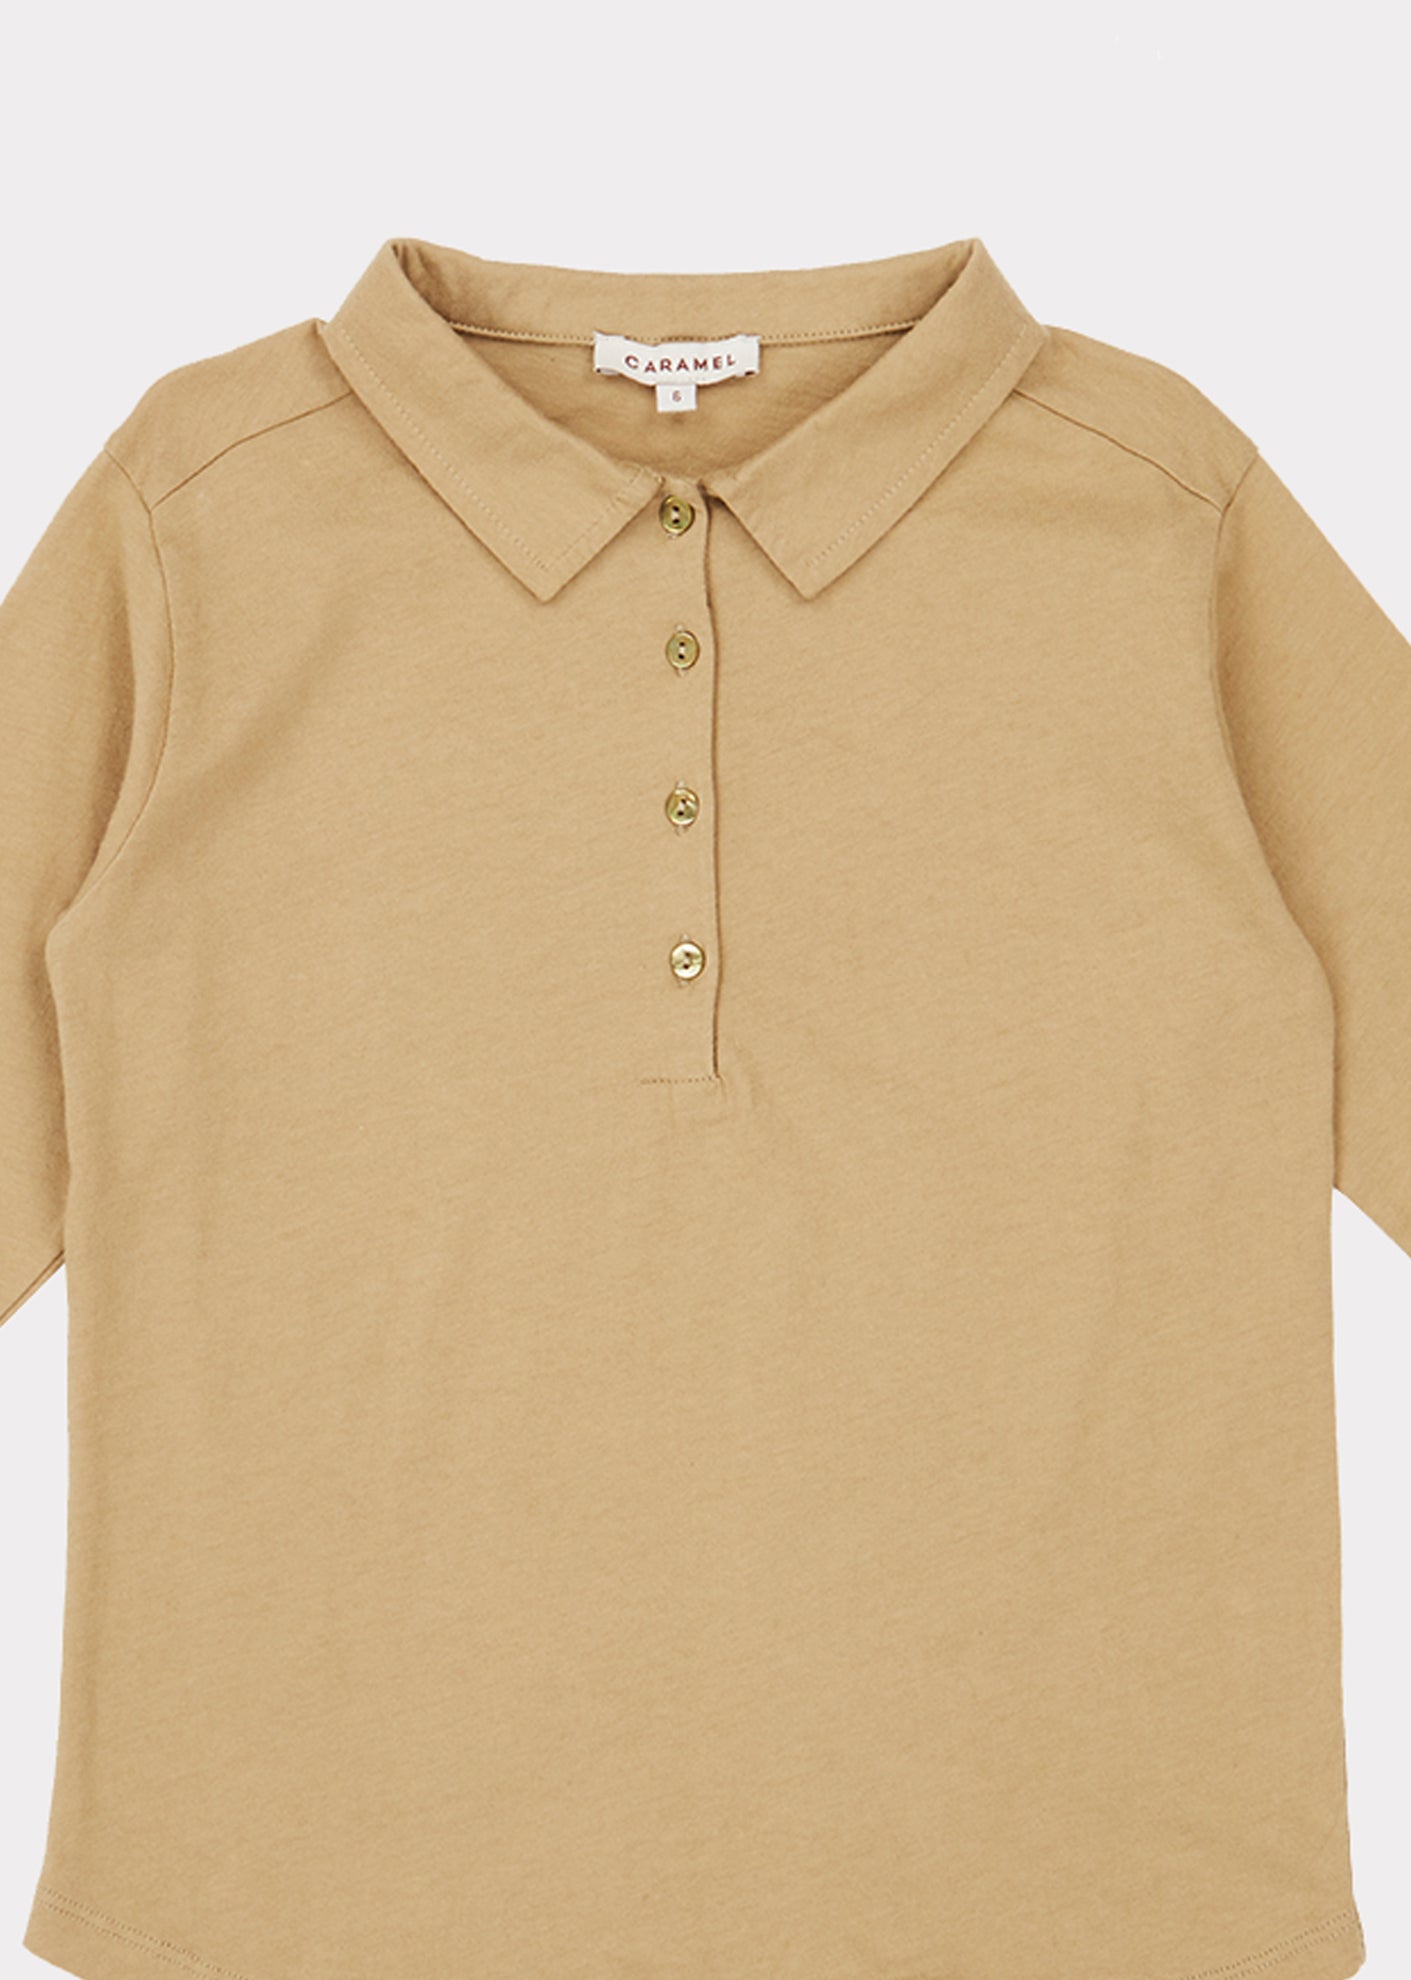 Boys Khaki Cotton Polo Shirt